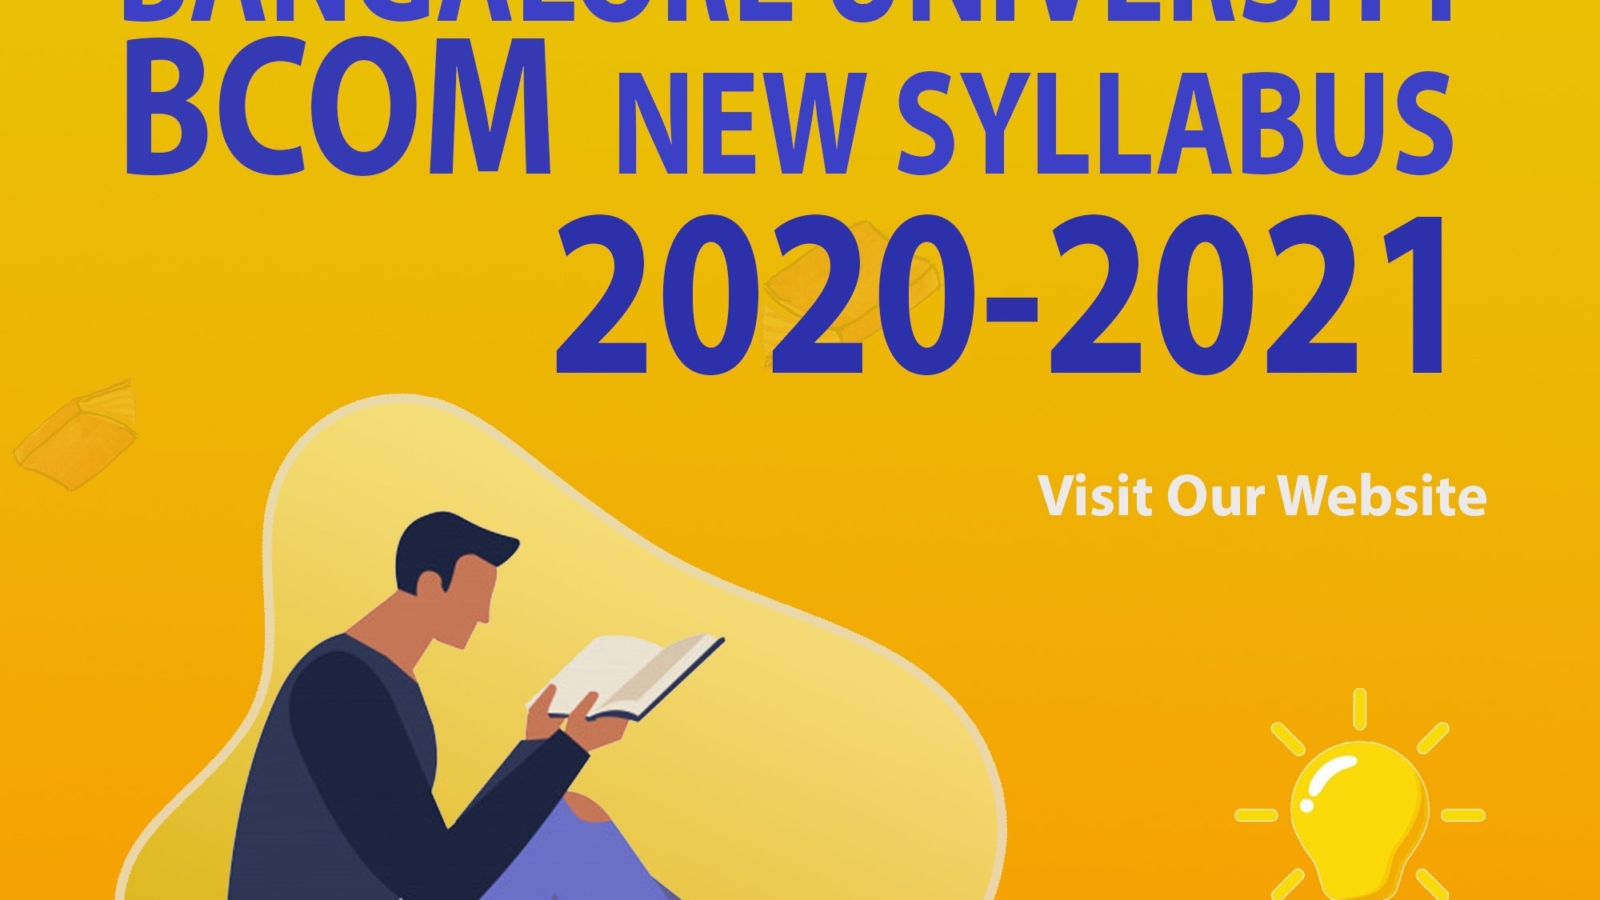 Bangalore University Bcom new Syllabus 2020-2021